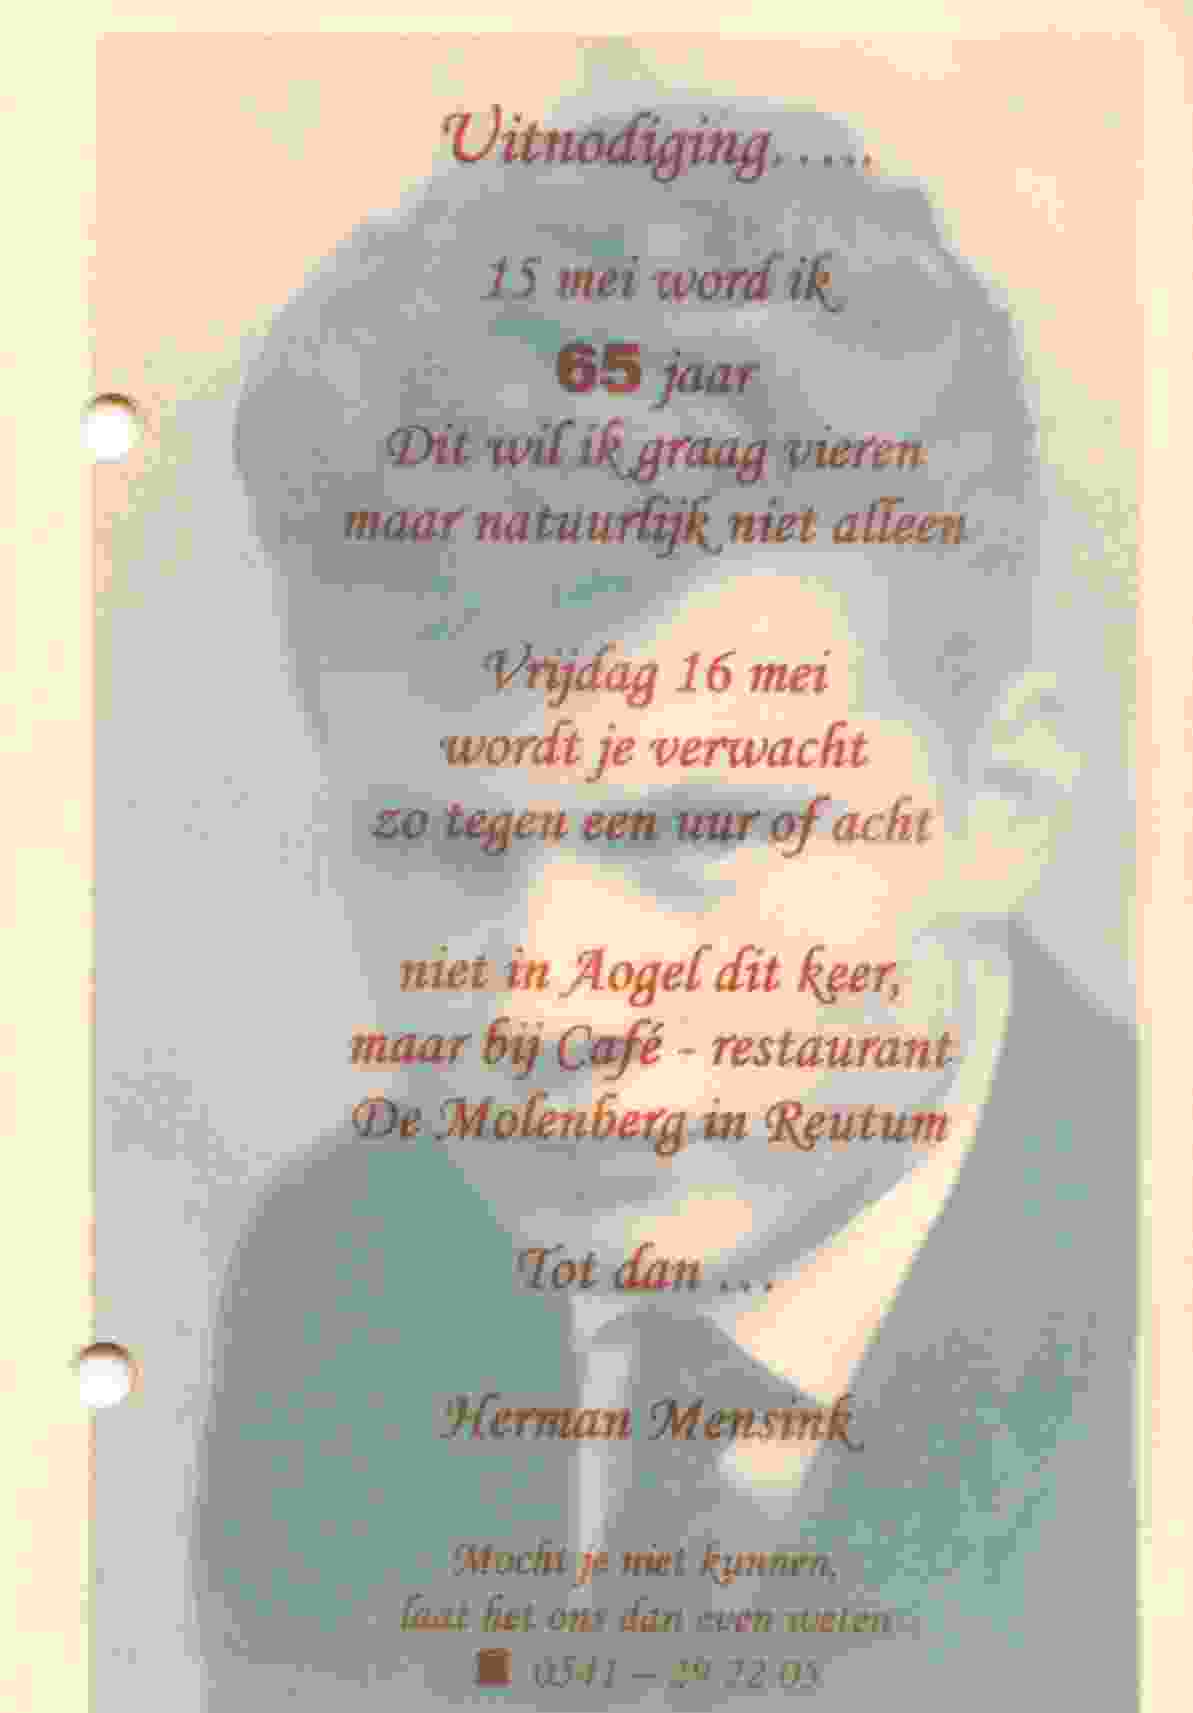 Herman Mensink word 65 jaar op 2008-05-15